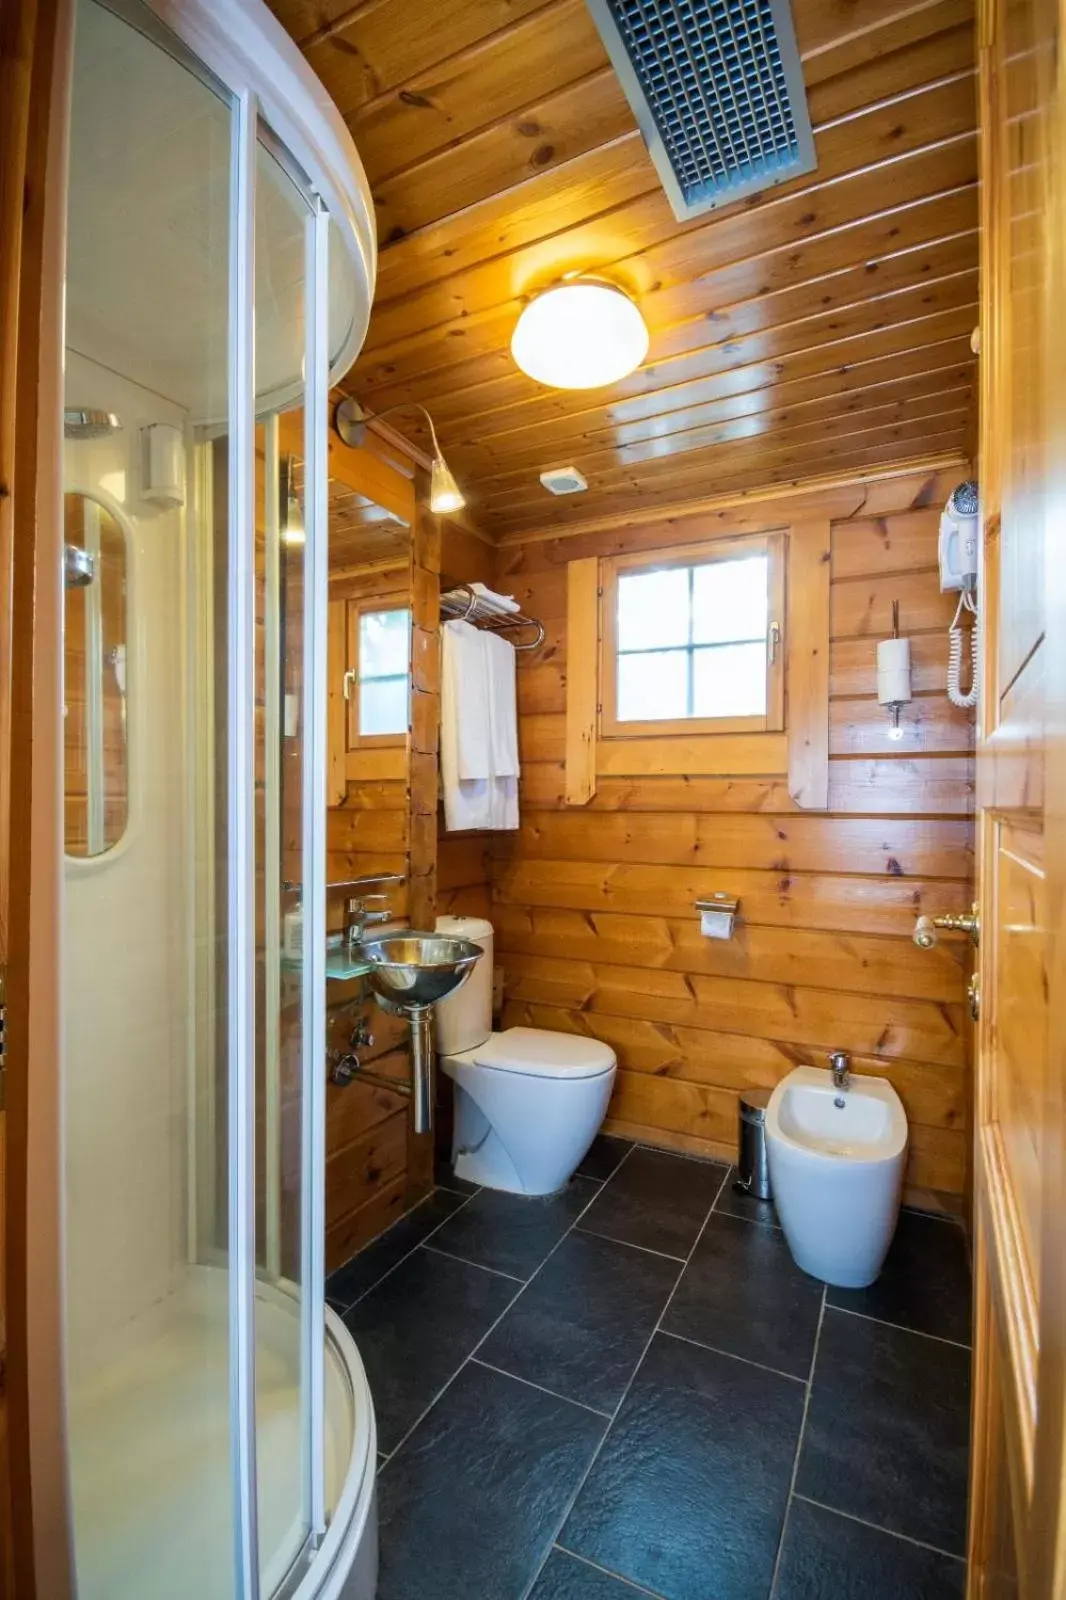 Shower, Bathroom in Hotel Somlom - ECO Friendly Montseny